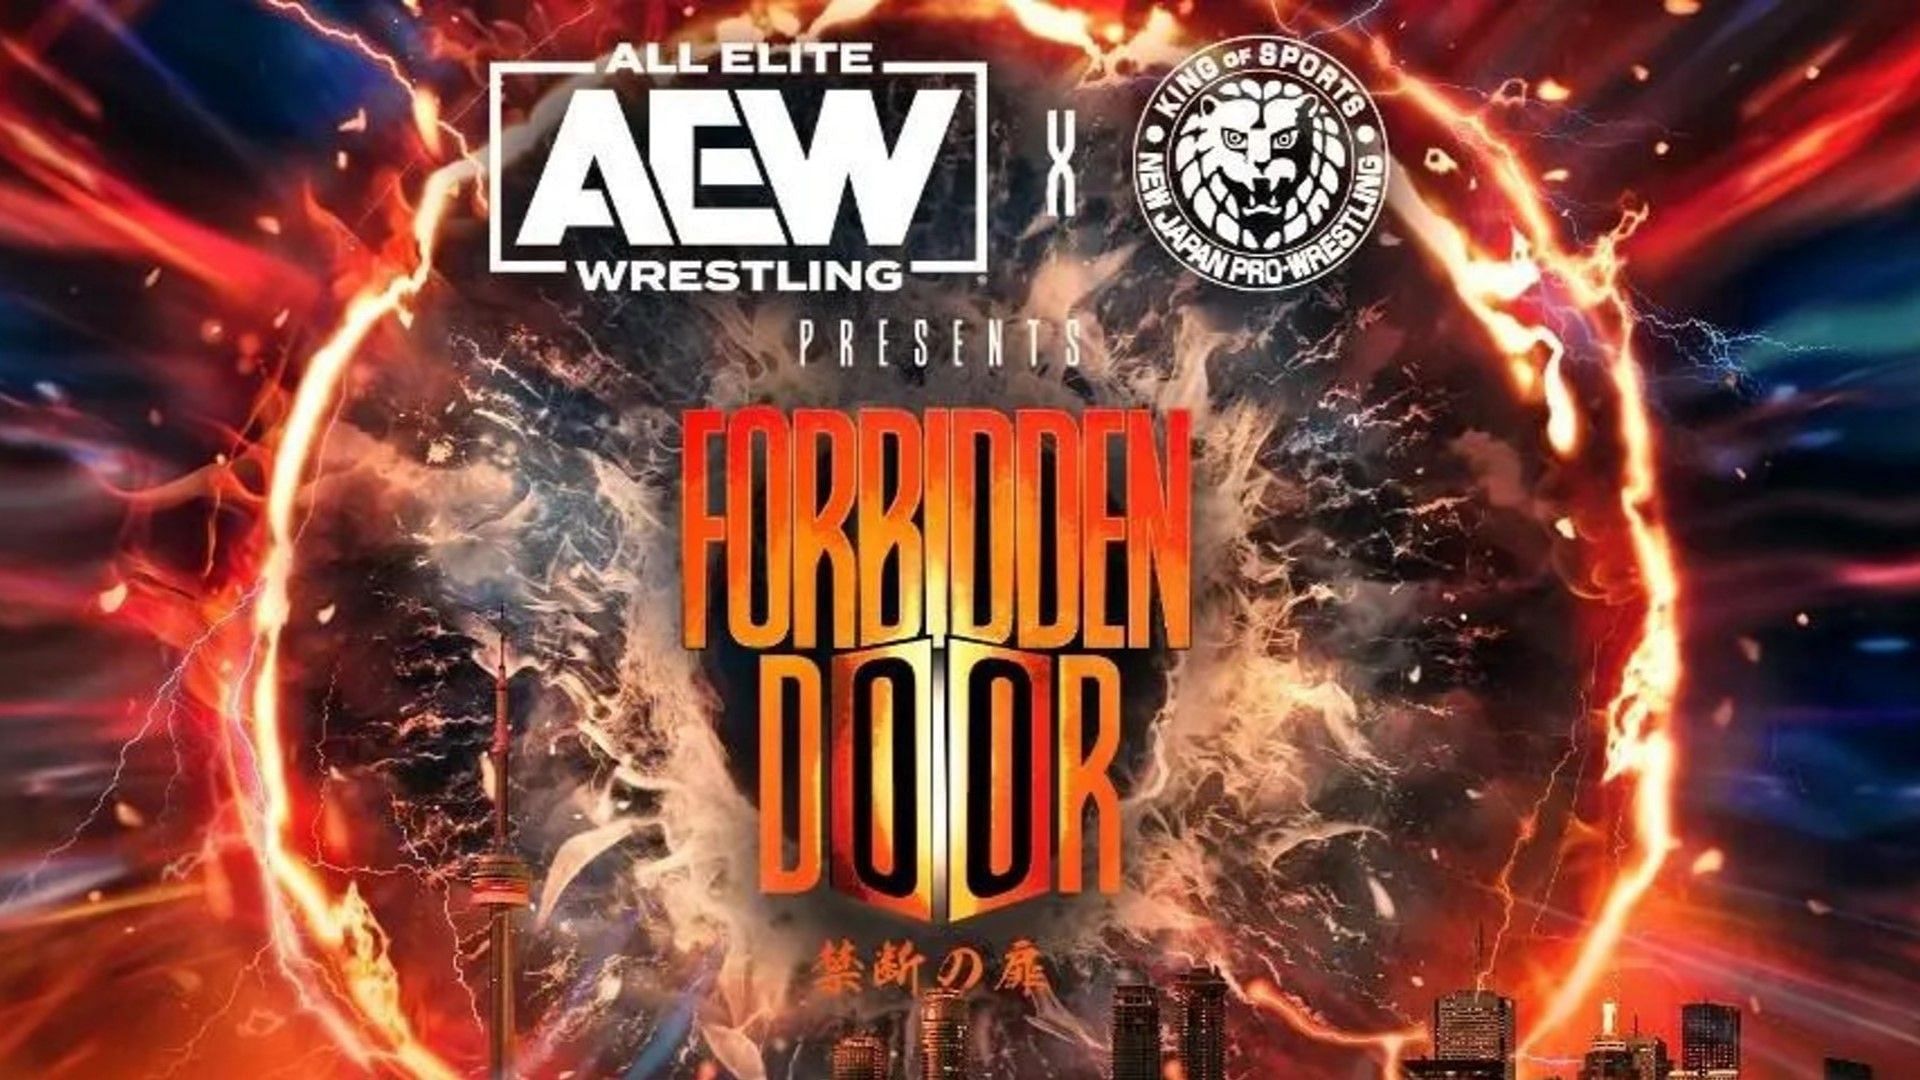 The logo for AEW x NJPW Forbidden Door